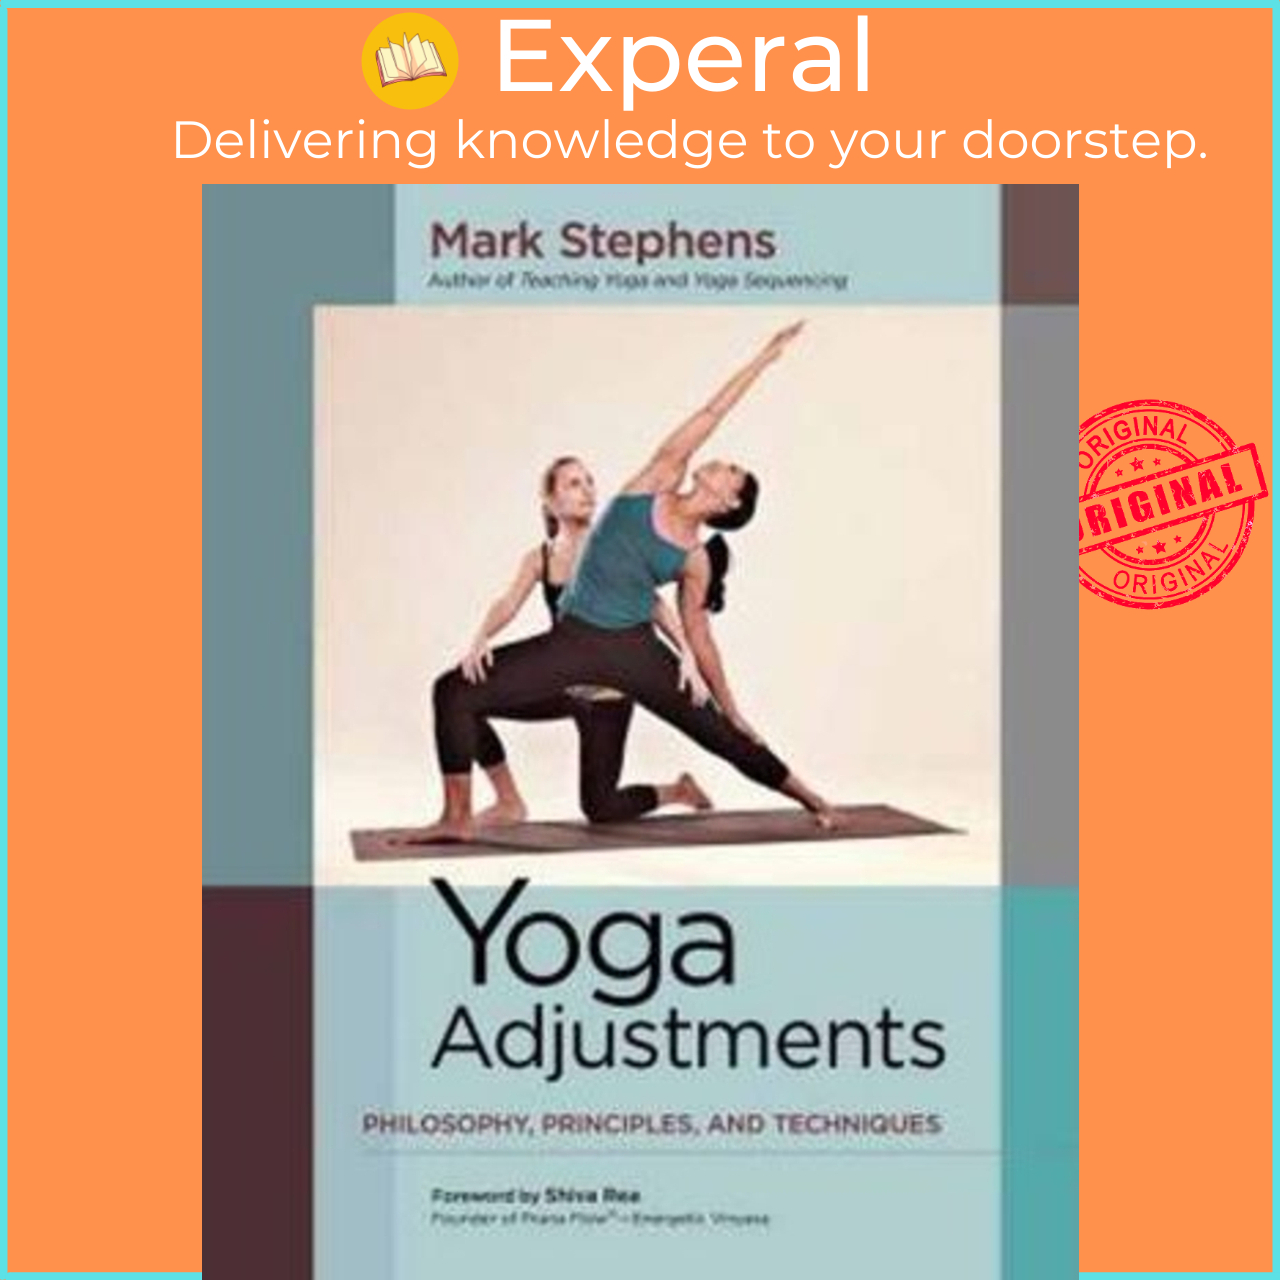 Mark Stephens - Author & Yoga Teacher - Mark Stephens Yoga